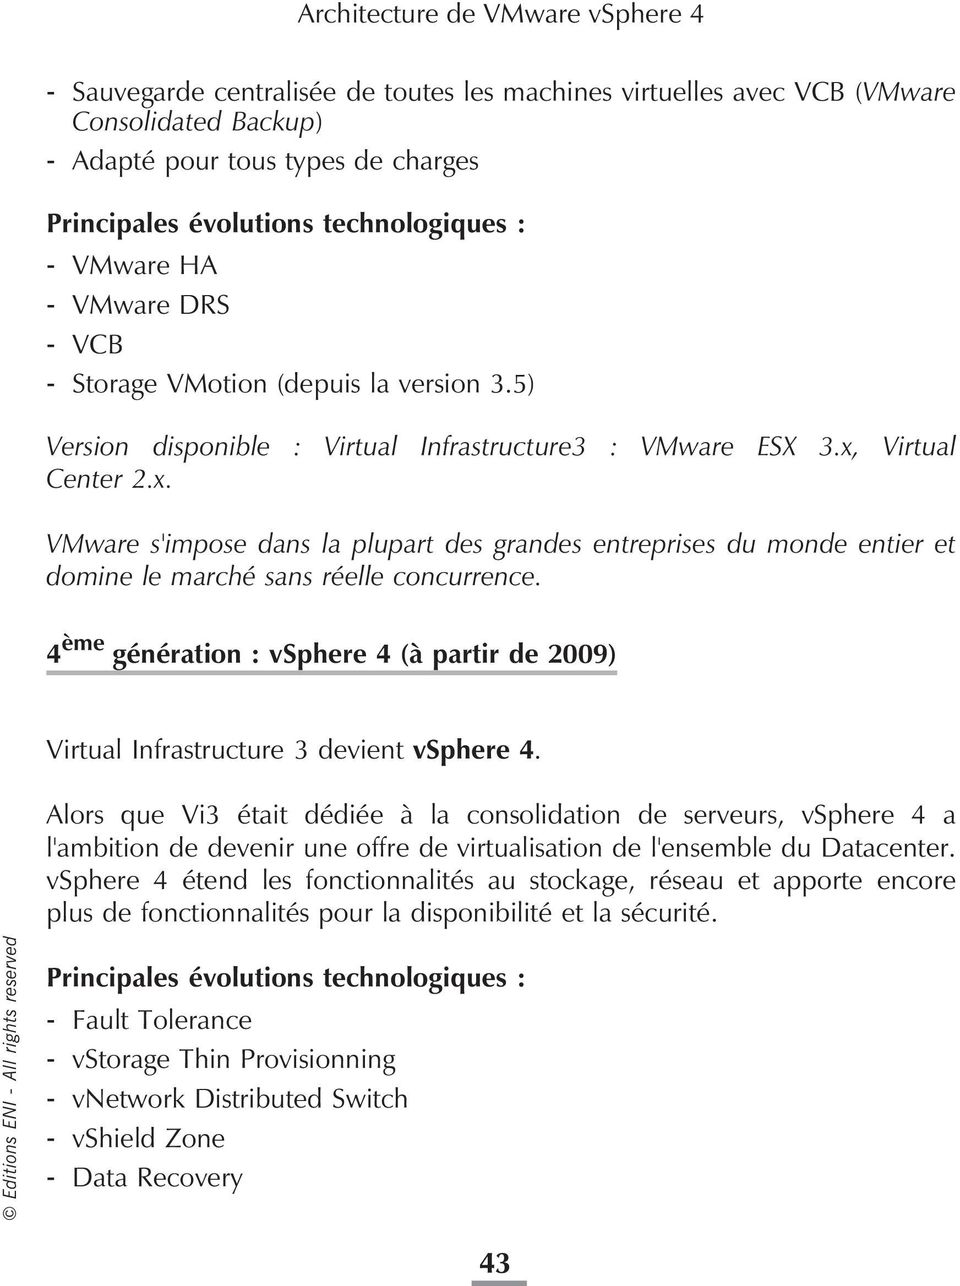 Virtual Center 2.x. VMware s'impose dans la plupart des grandes entreprises du monde entier et domine le marché sans réelle concurrence.